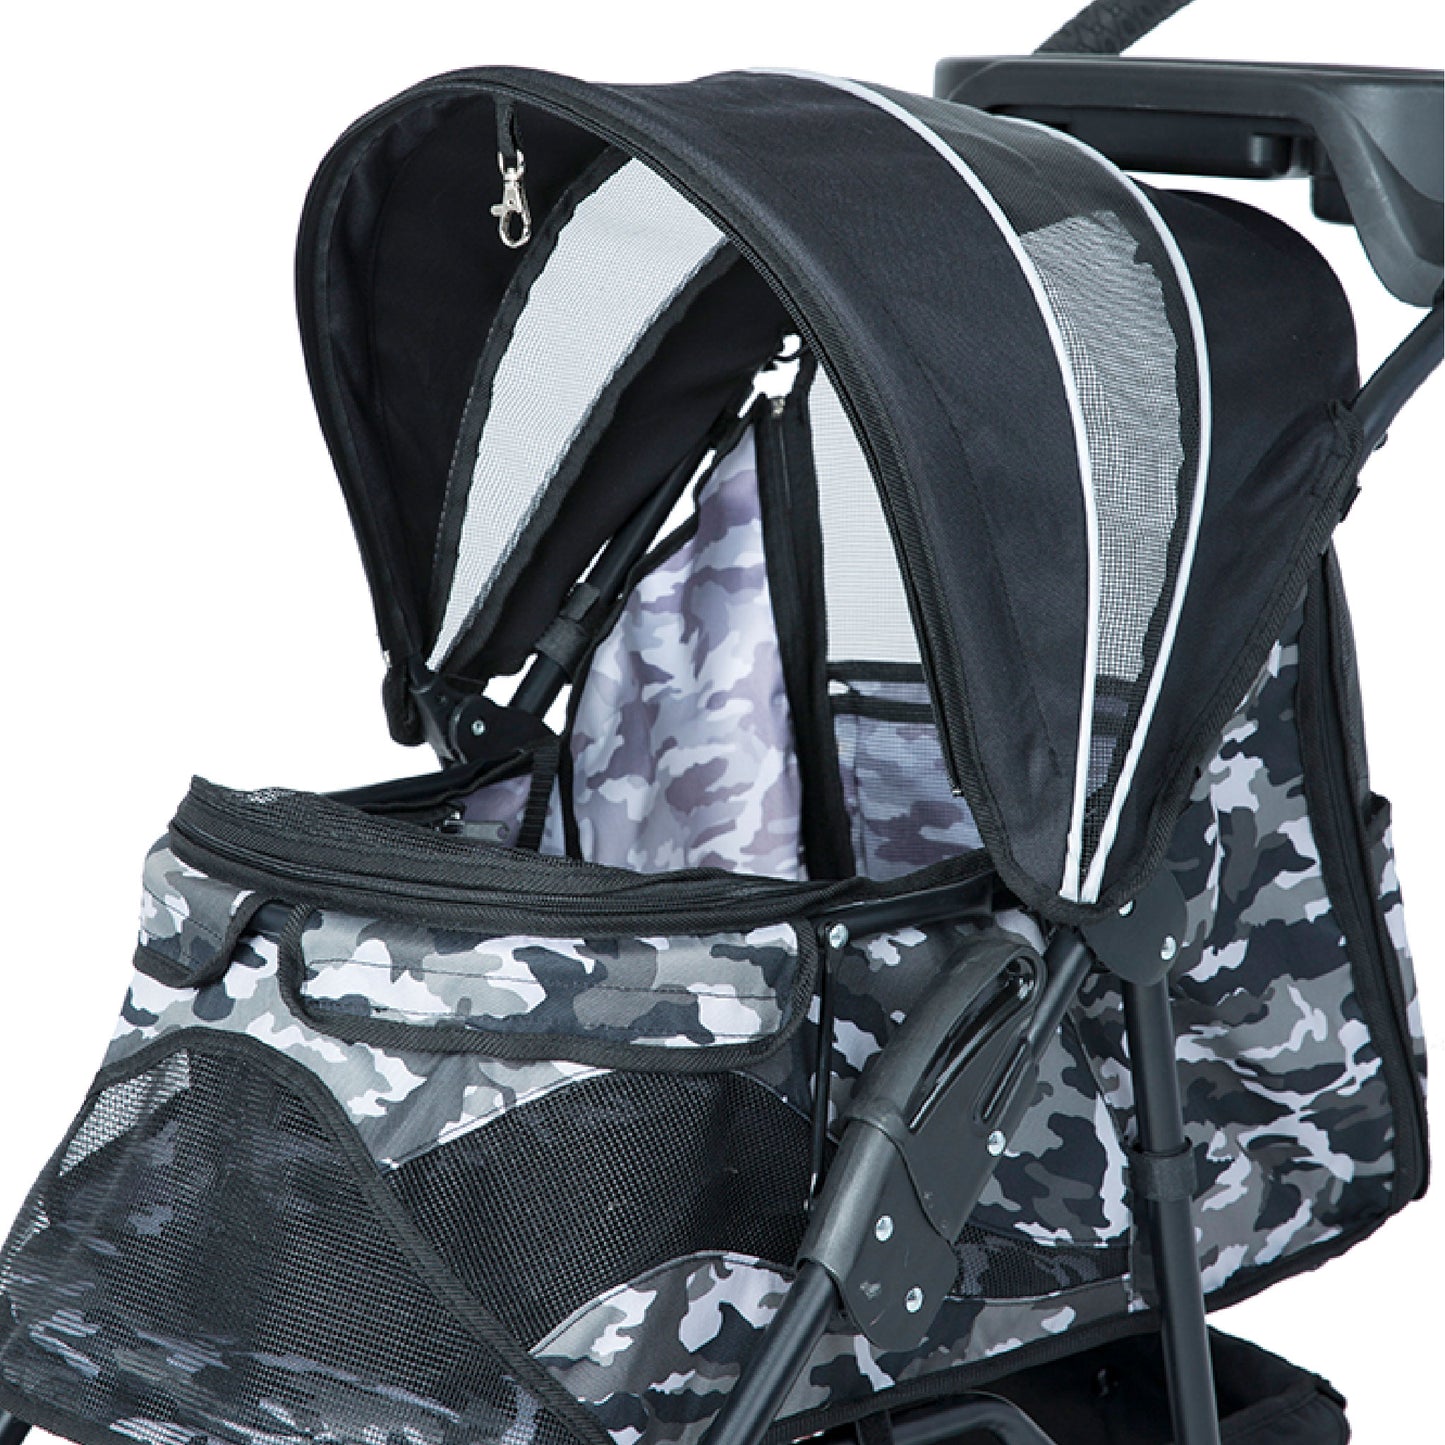 close up on black camo pet stroller